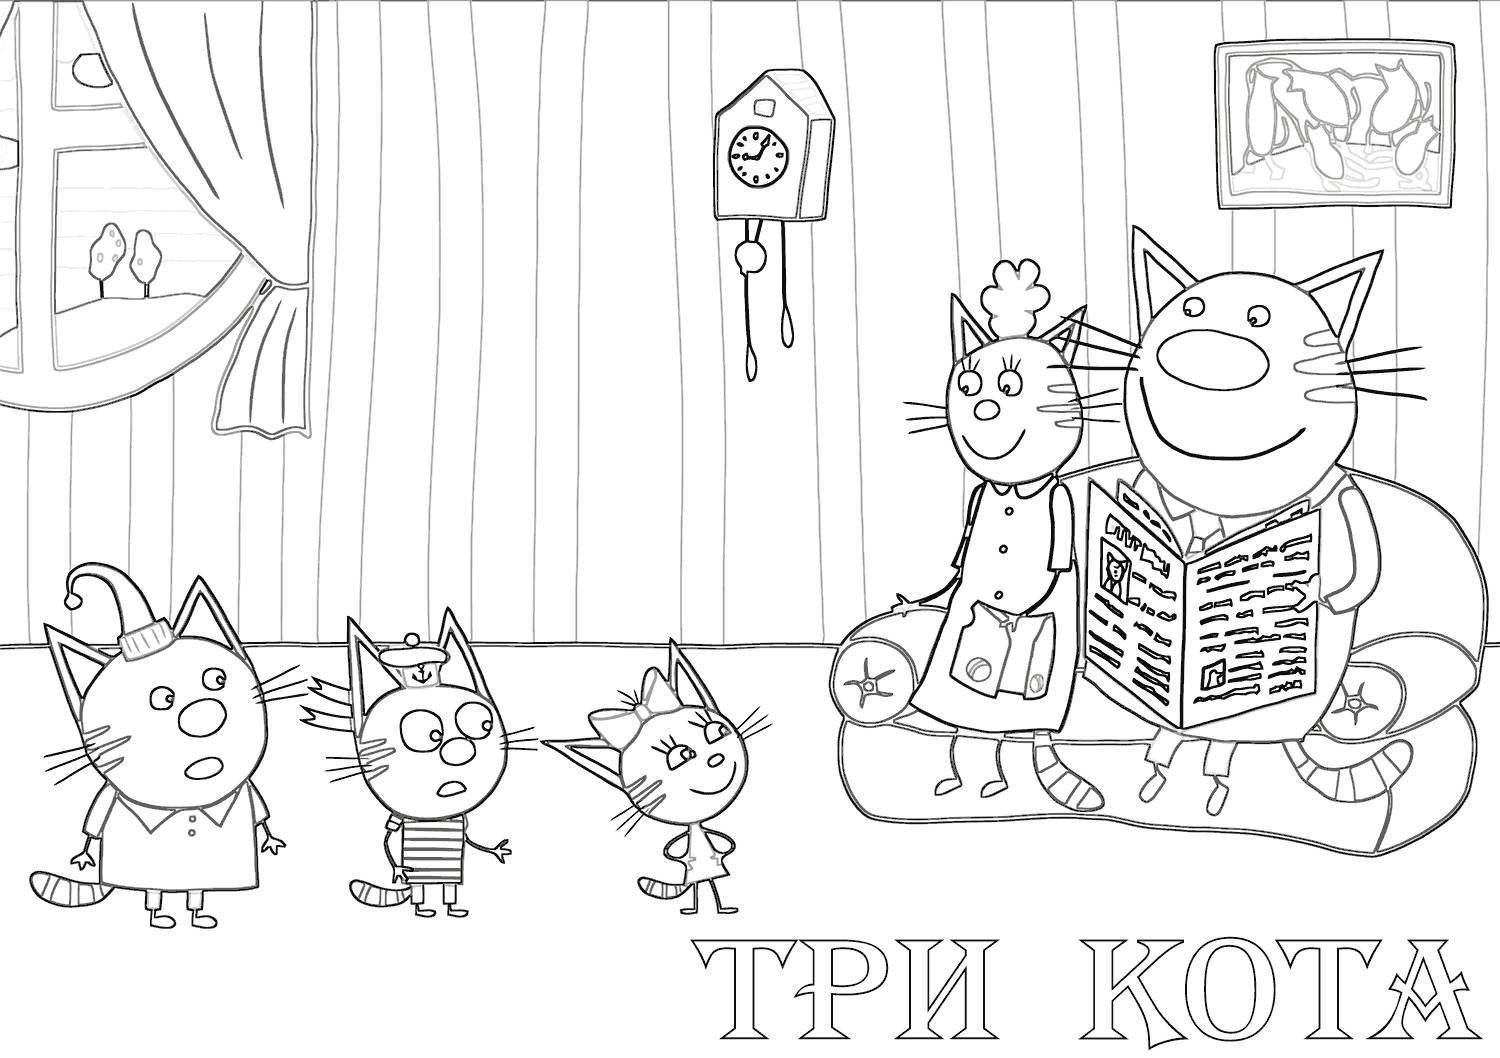 Cartoon three cats